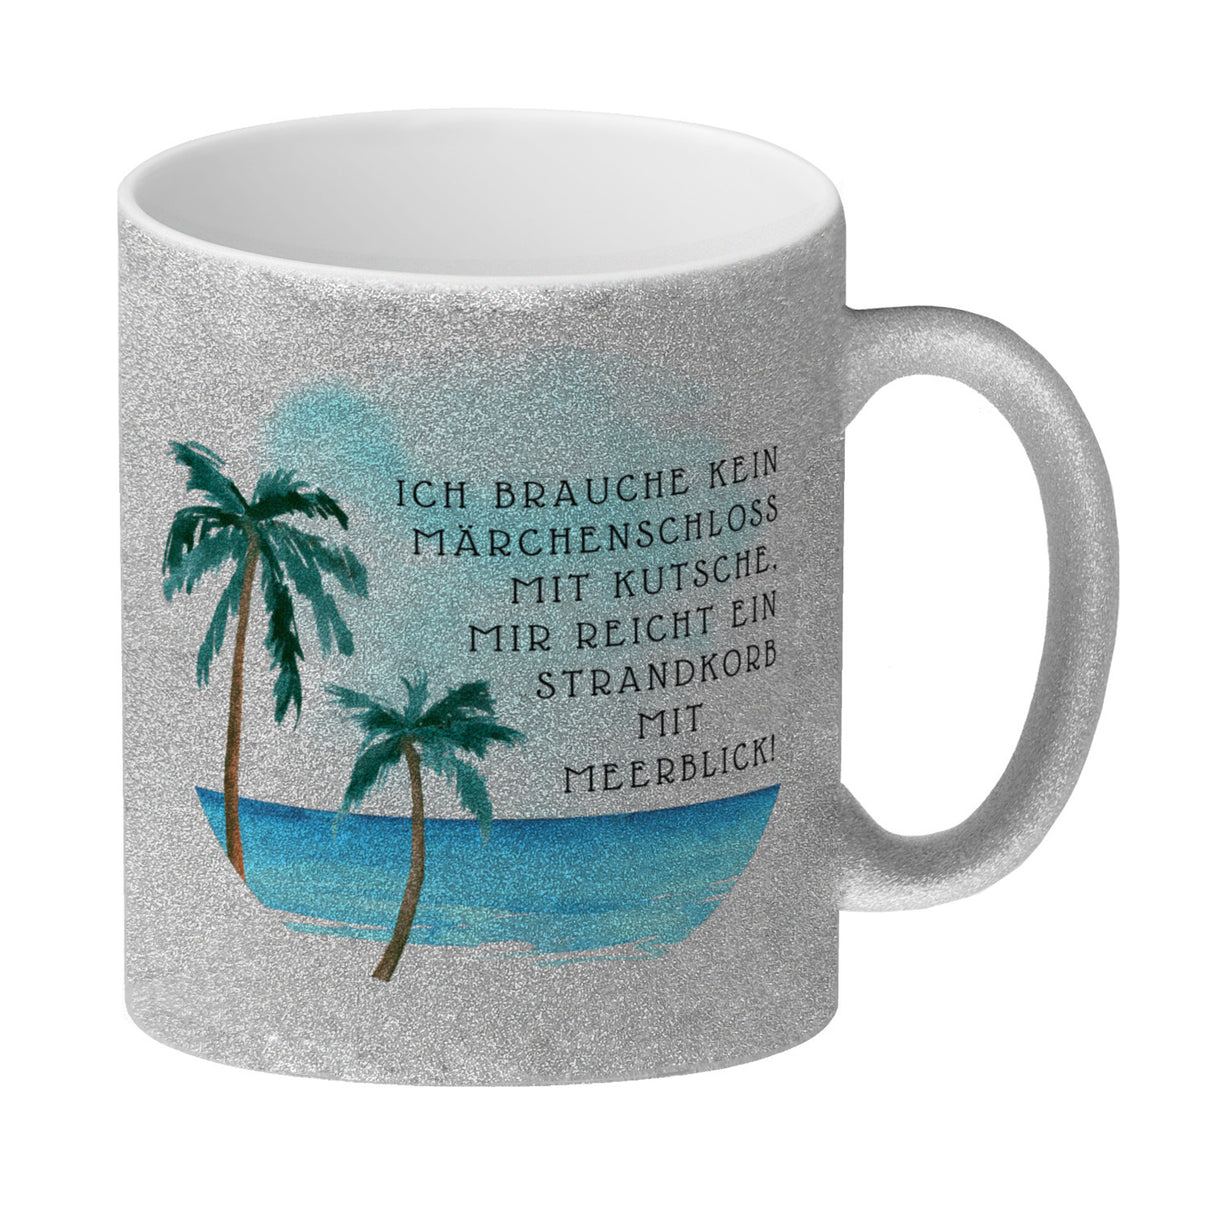 Strandkorb und Meerblick Kaffeebecher mit Spruch